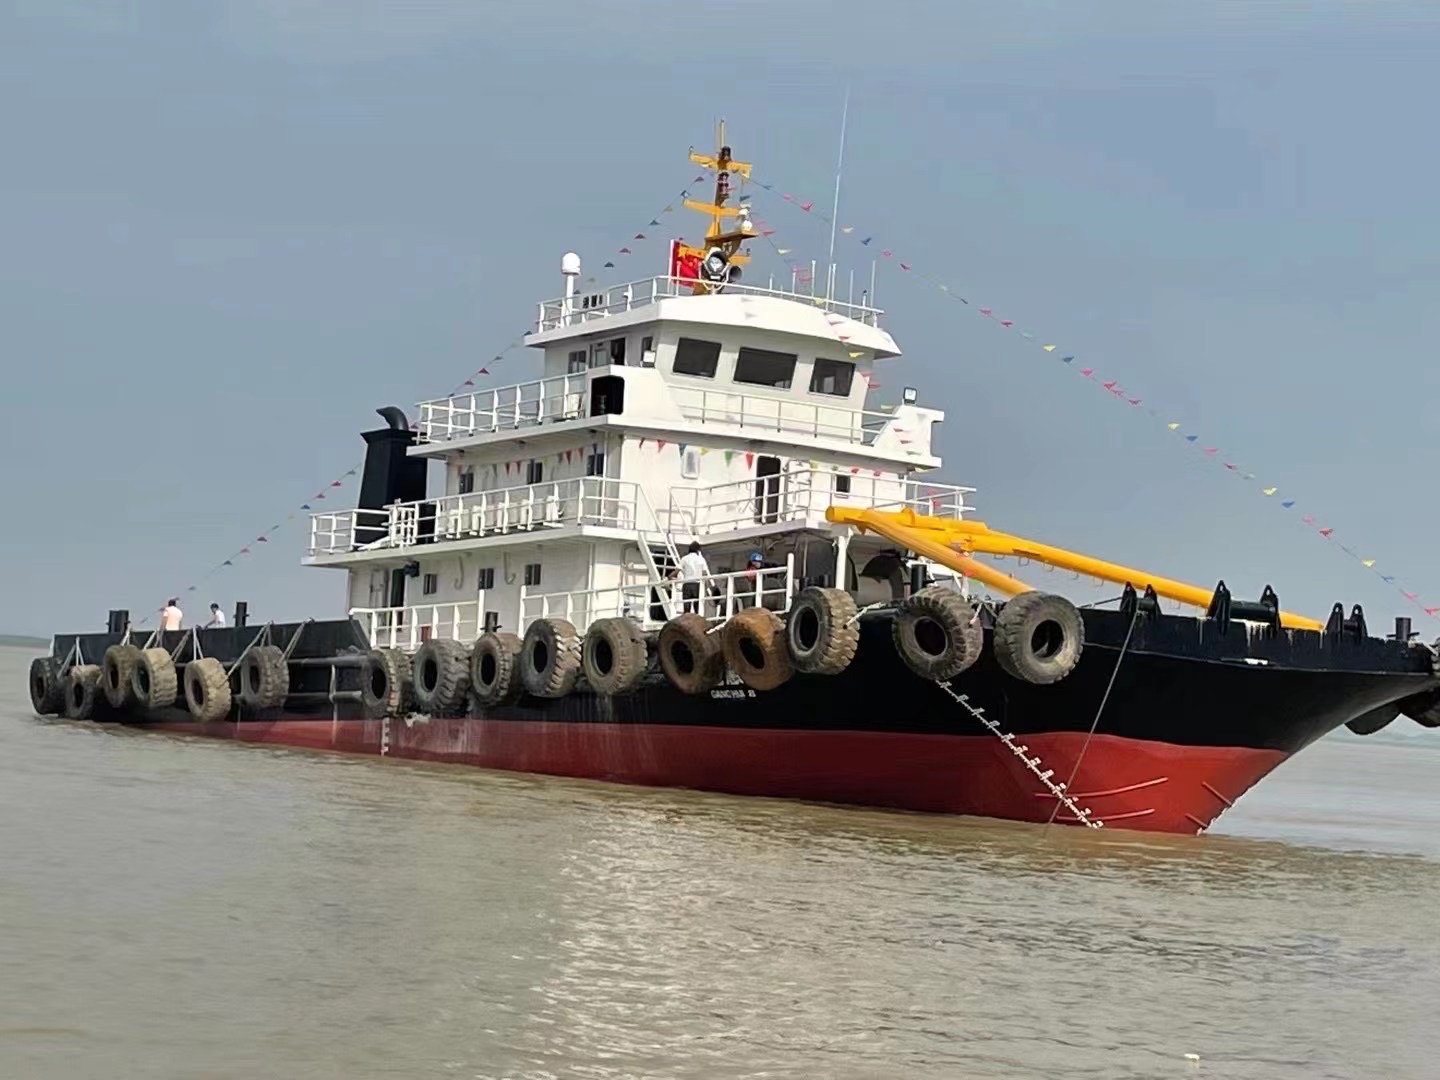 出租锚艇 — 多用途拖轮 拖轮 交易 船舶交易,中国船舶交易网